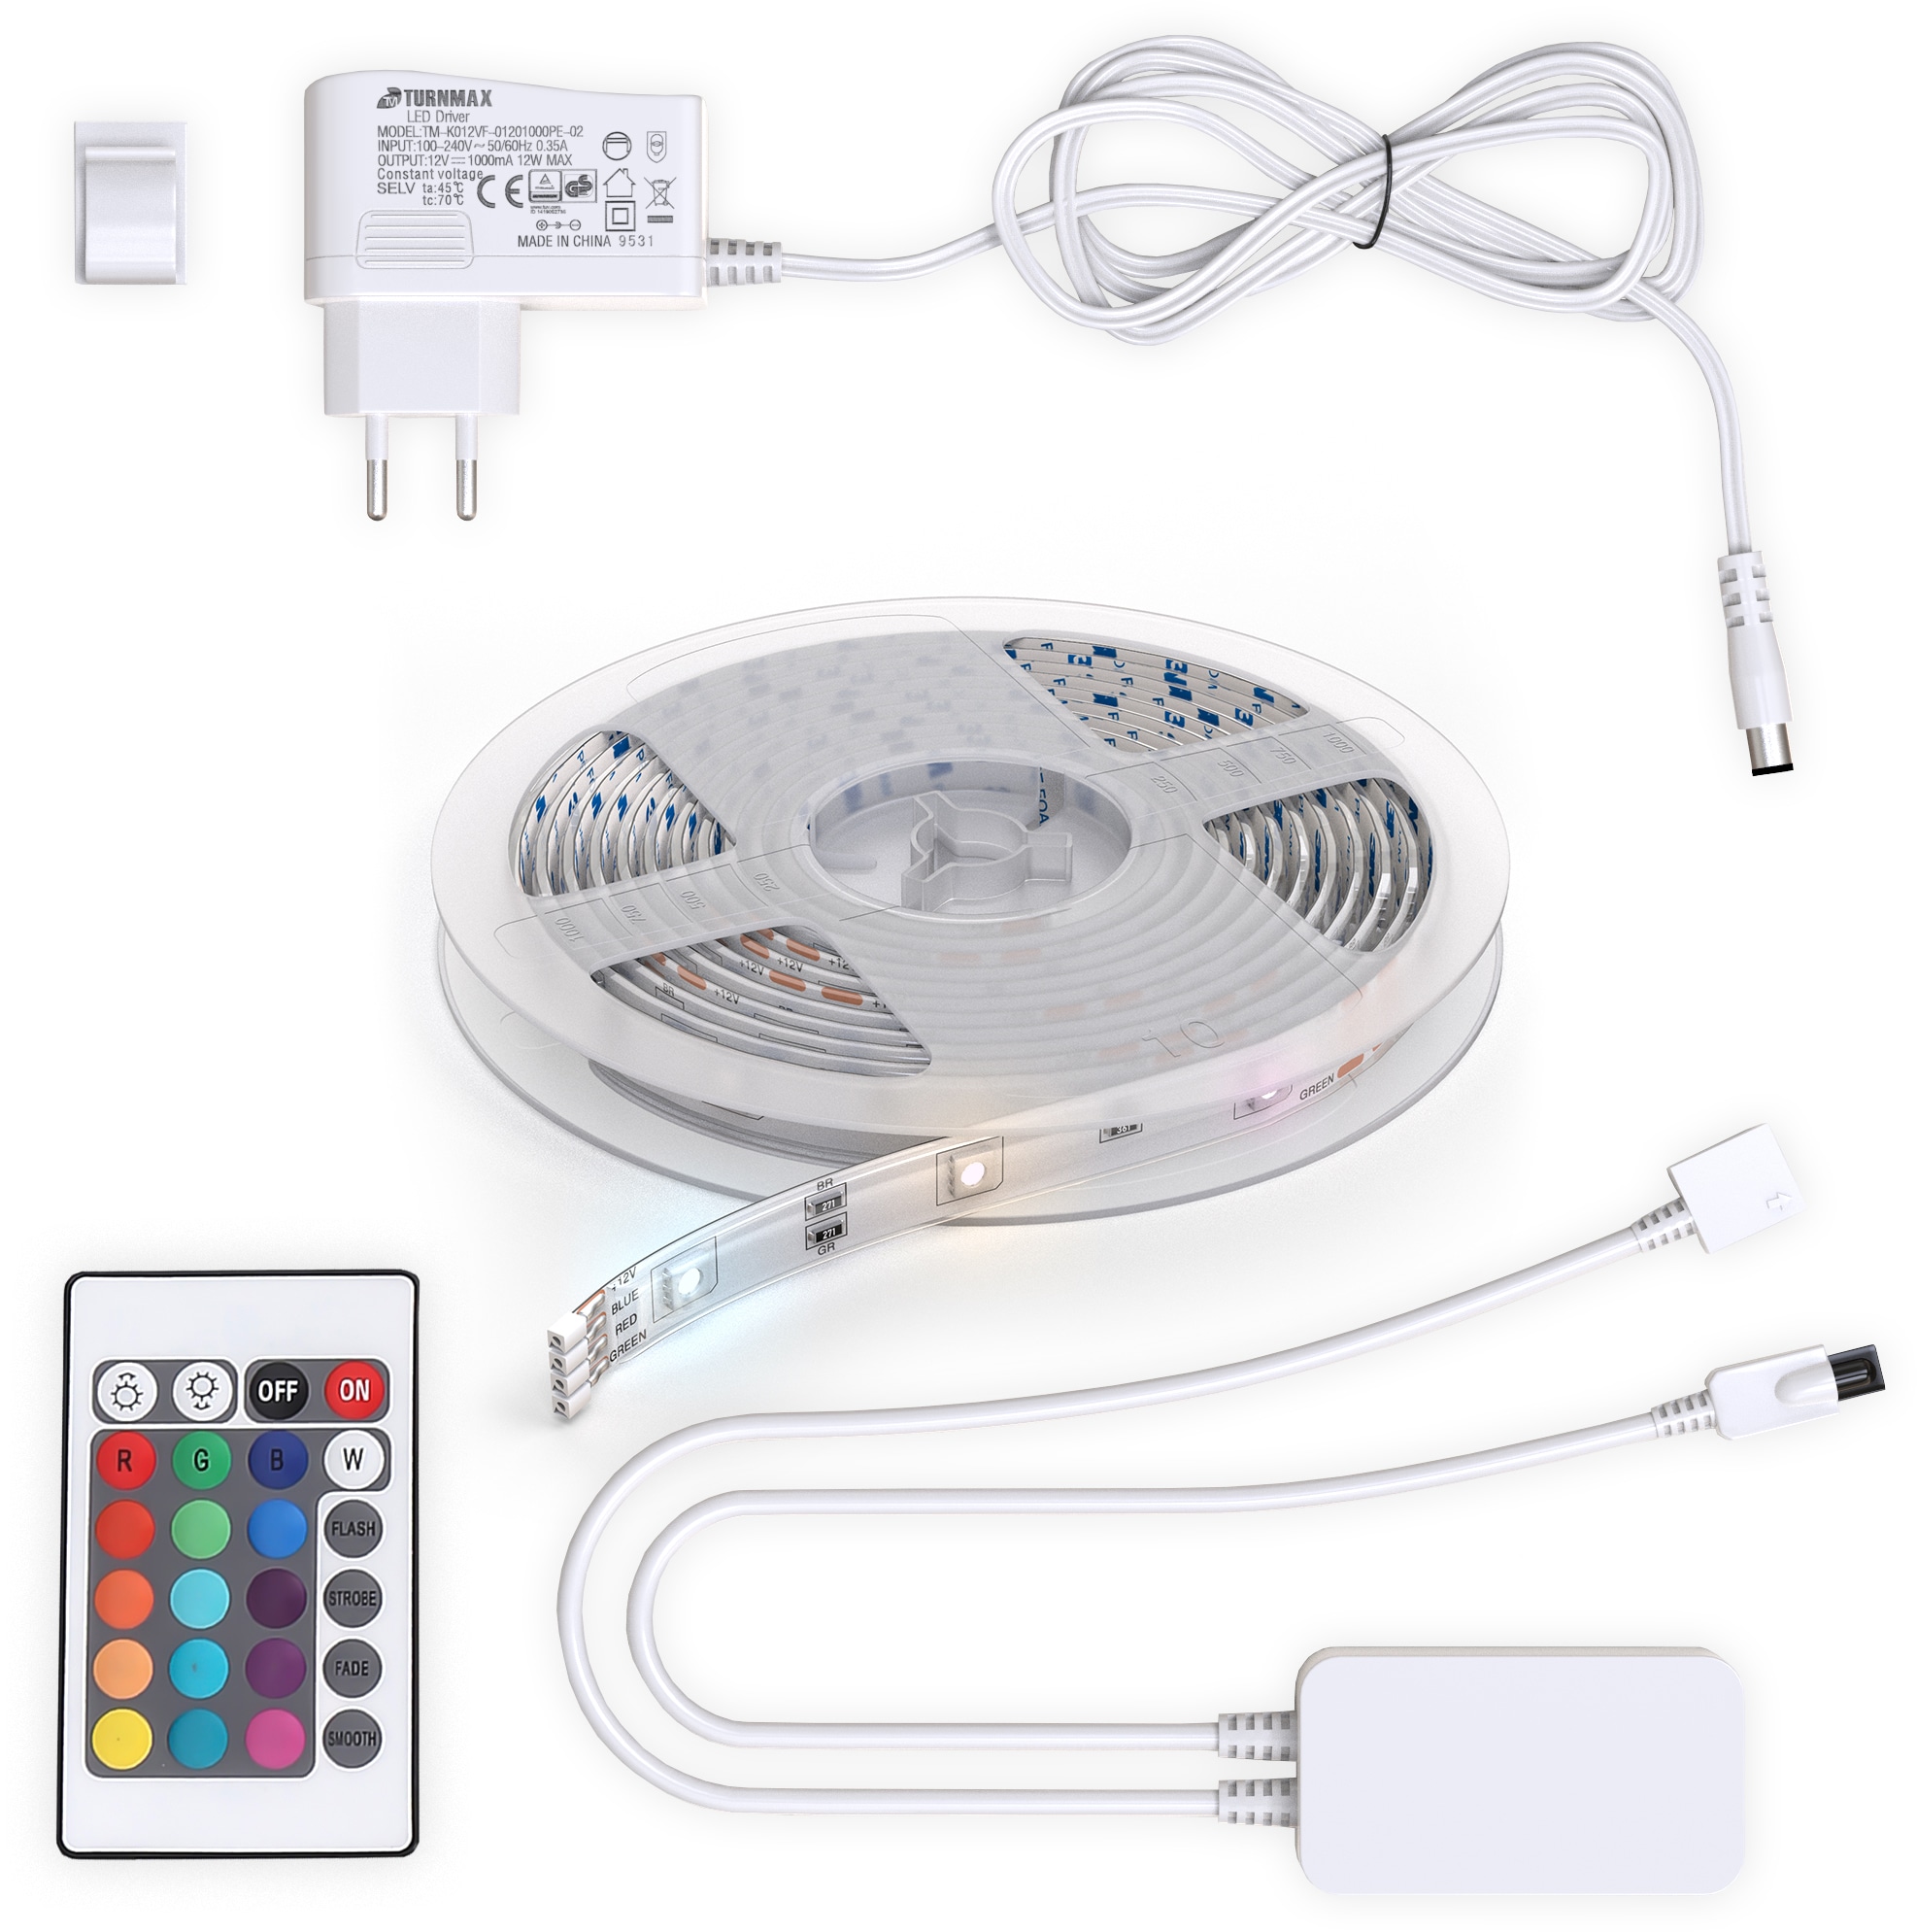 B.K.Licht LED-Streifen, 3m Smart Home LED Band/Stripes dimmbar mit WiFi  App-Steuerung kaufen online bei OTTO